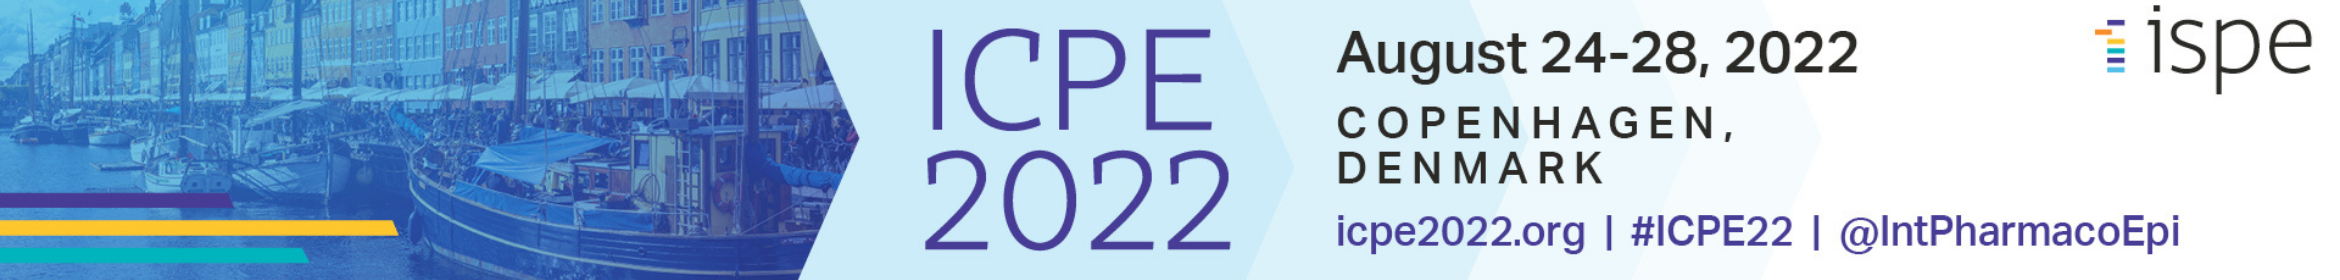 ICPE 2022 Main banner